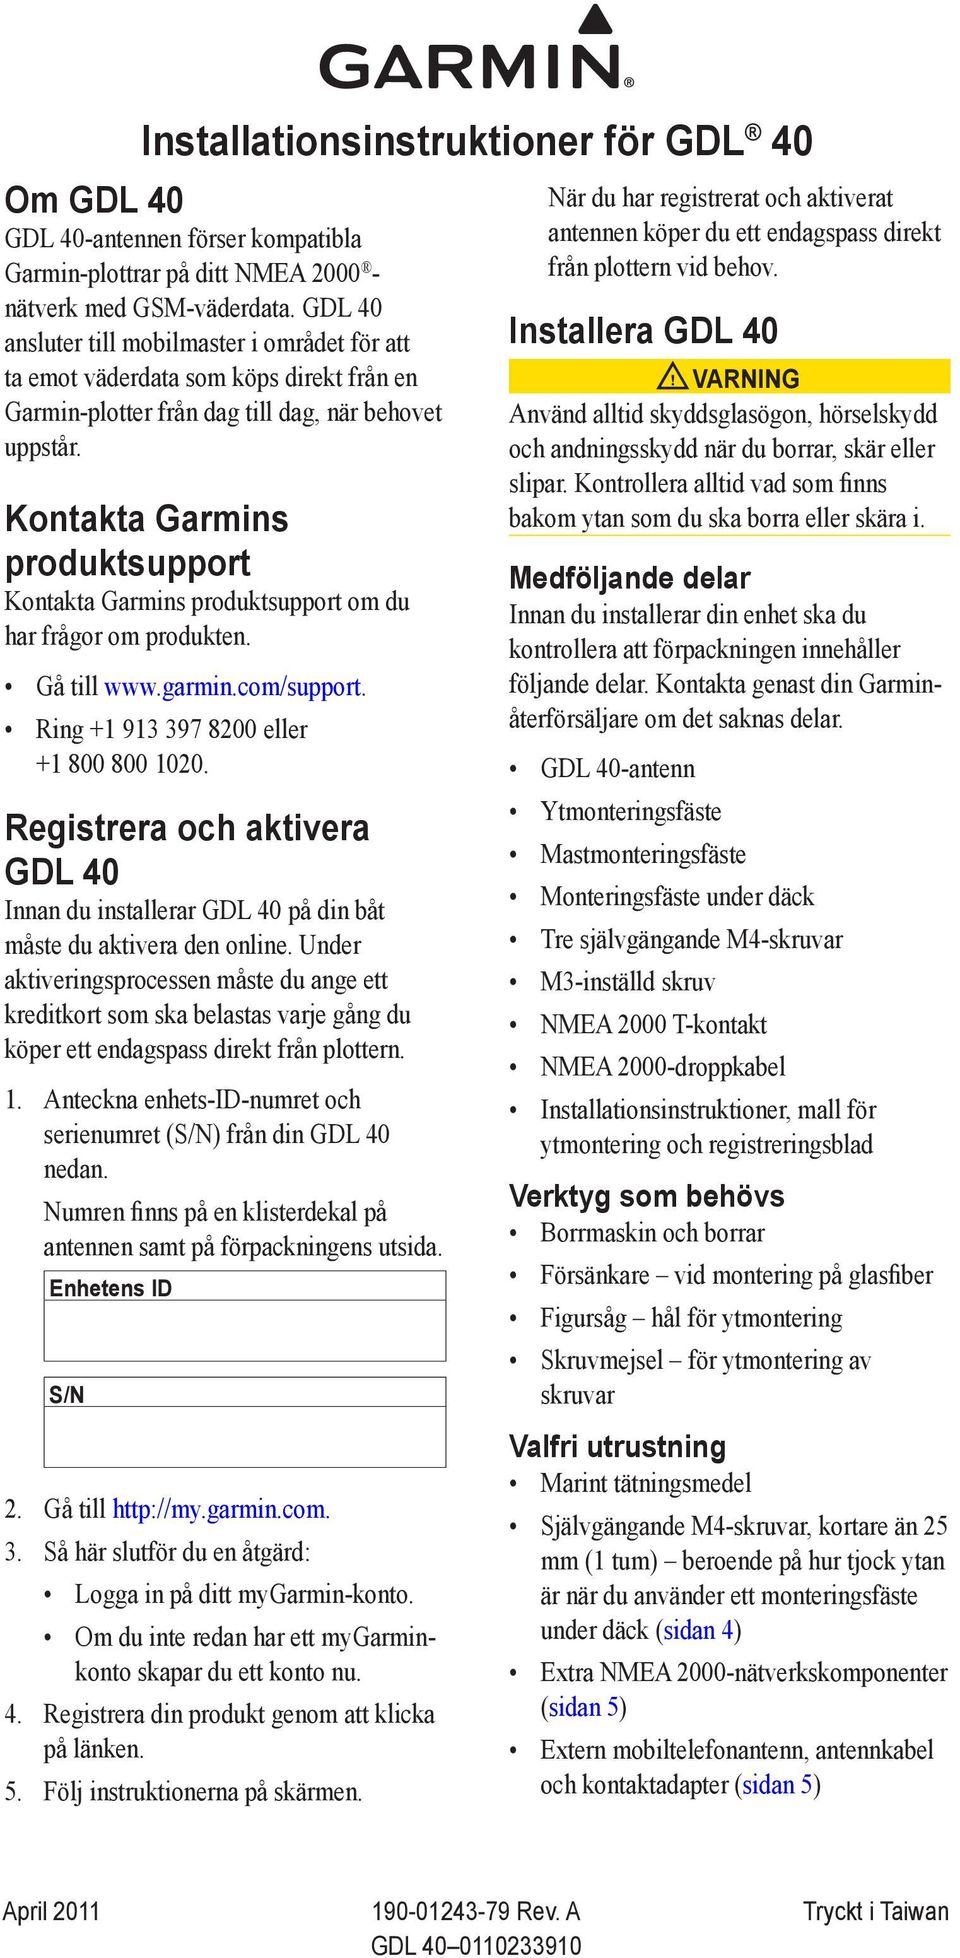 Kontakta Garmins produktsupport Kontakta Garmins produktsupport om du har frågor om produkten. Gå till www.garmin.com/support. Ring +1 913 397 8200 eller +1 800 800 1020.